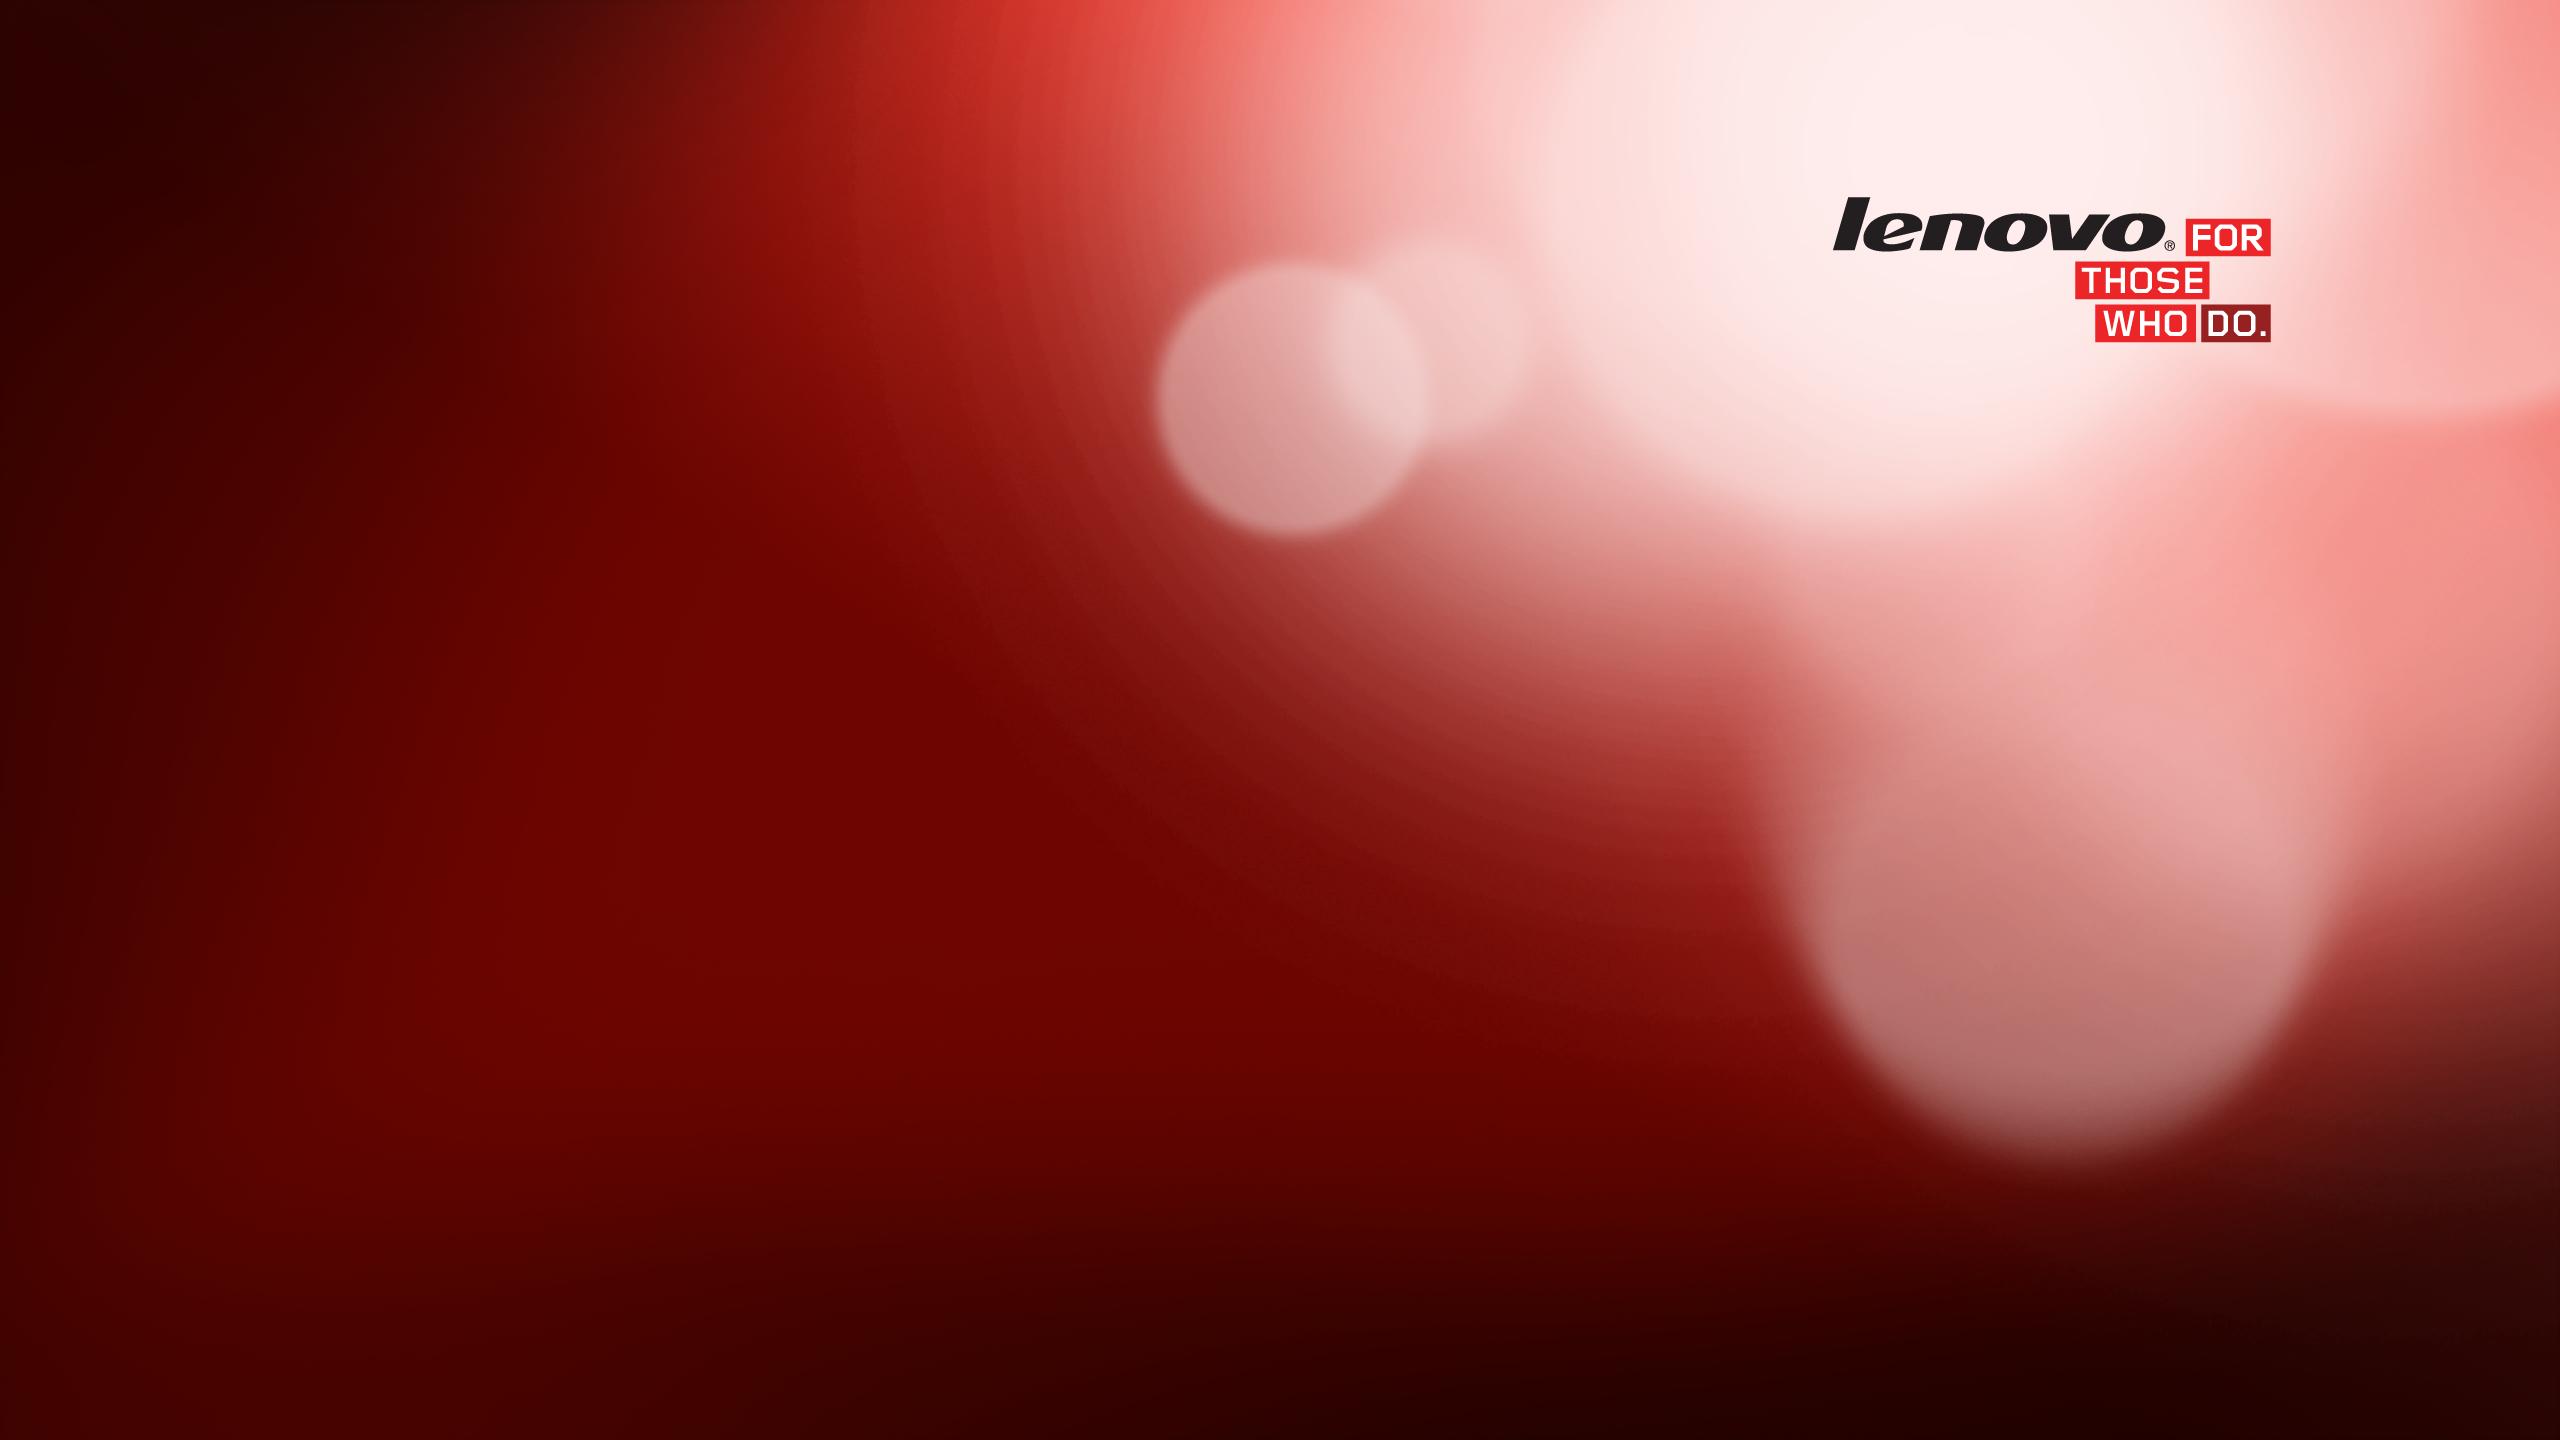 Đam mê công nghệ và phong cách tinh tế? Lenovo Thinkpad Wallpaper sẽ làm bạn phát cuồng với những hình nền tuyệt đẹp được sáng tạo từ chính thiết kế của các dòng sản phẩm Lenovo hàng đầu.